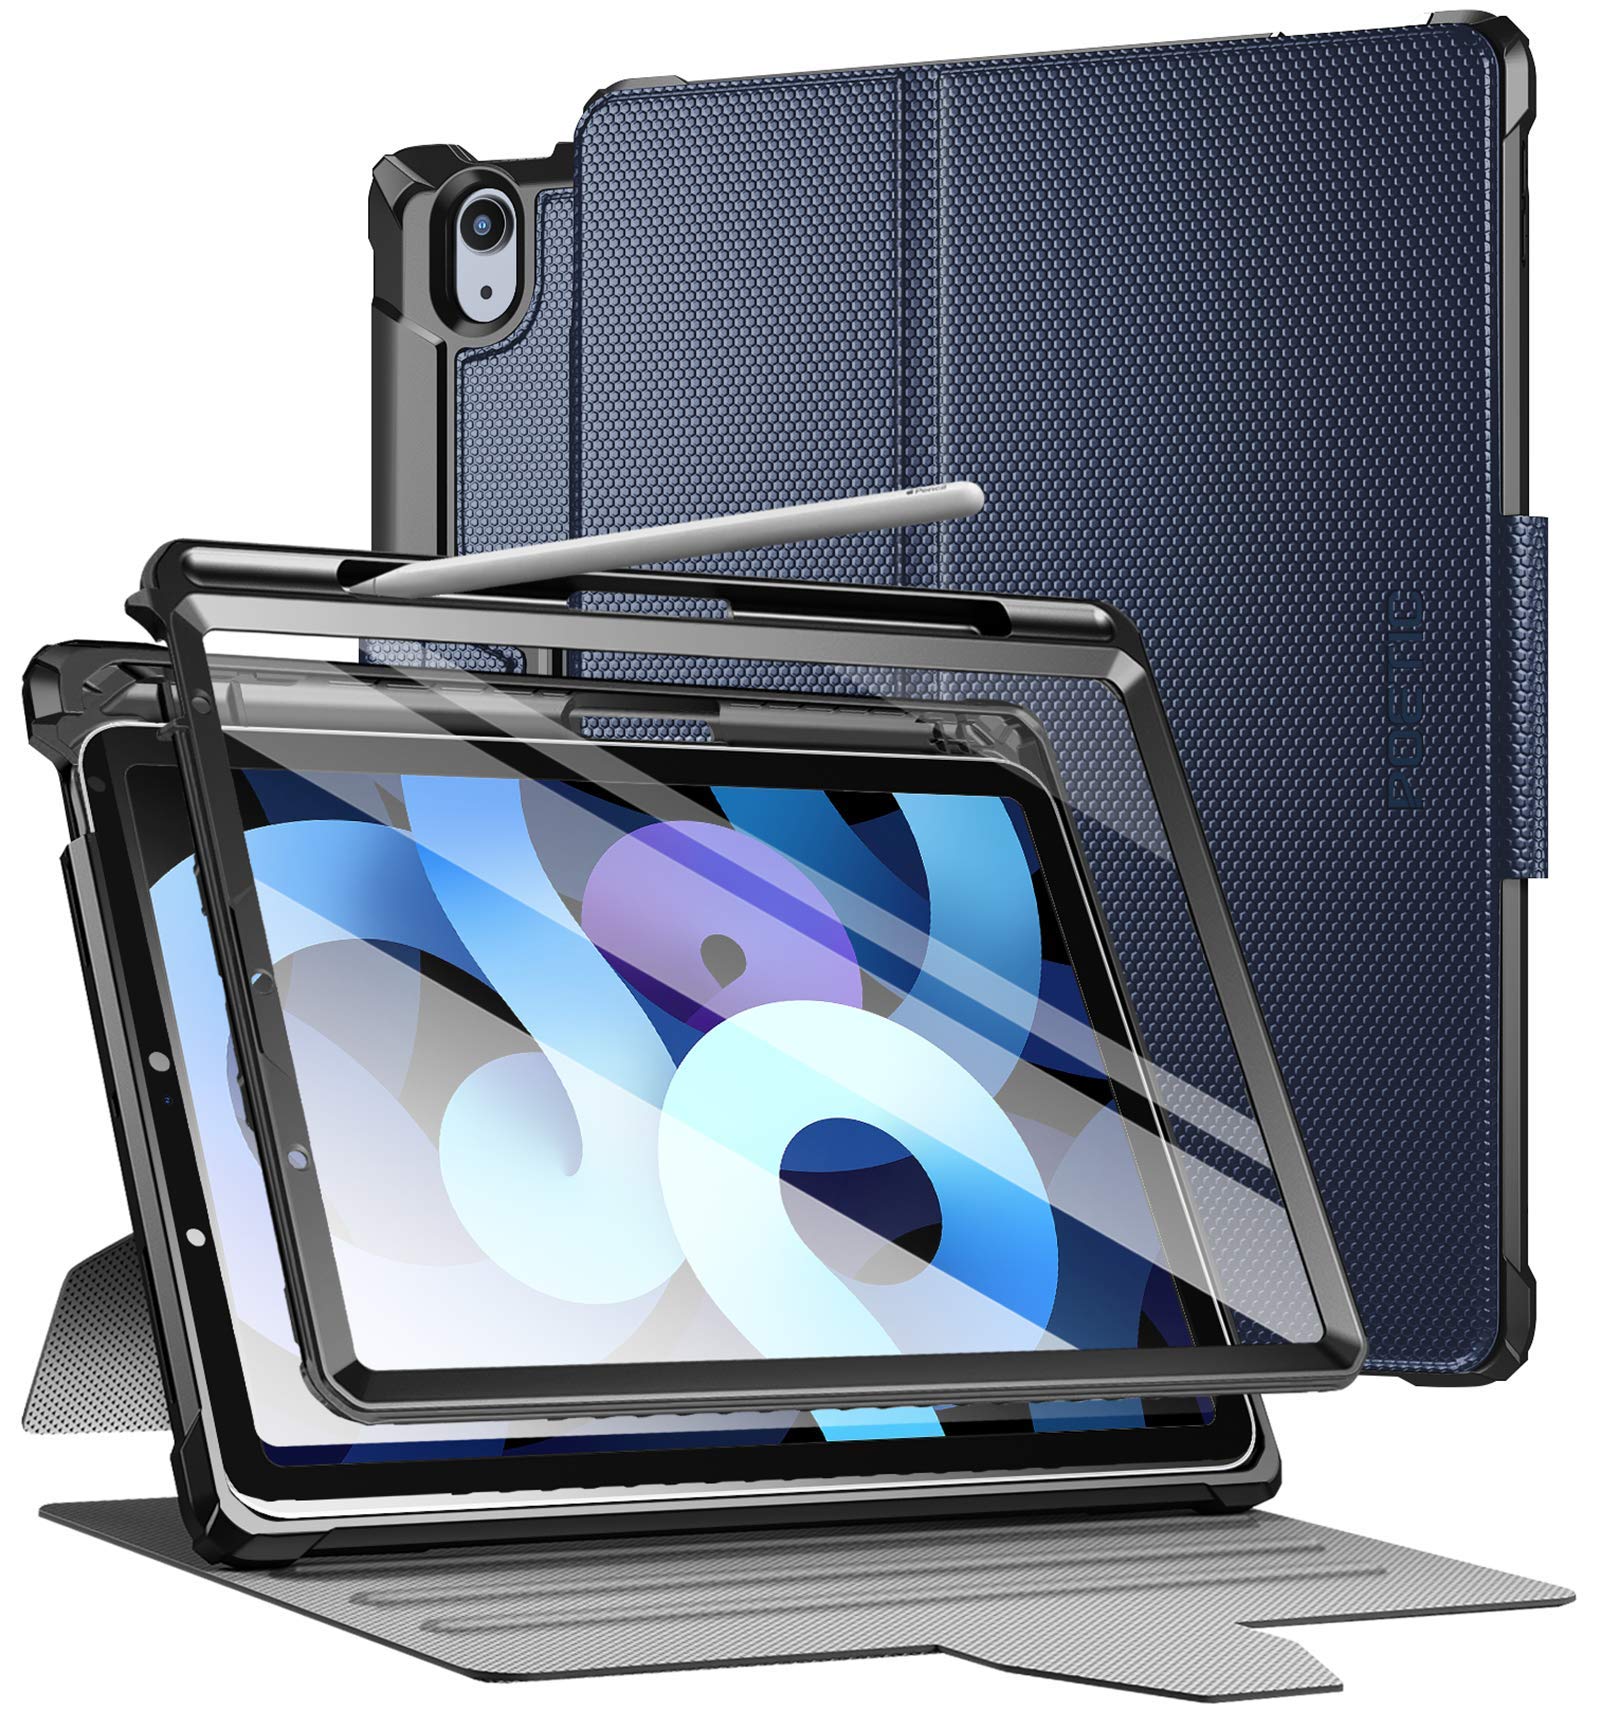 Poetic Explorer Schutzhülle für iPad Air 4 2020 10,9 Zoll, 3-lagig, robust, 360-Grad-Ständer, Folio-Hülle mit Stifthalter, Eingebauter Displayschutzfolie für iPad Air 4. Generation, Marineblau